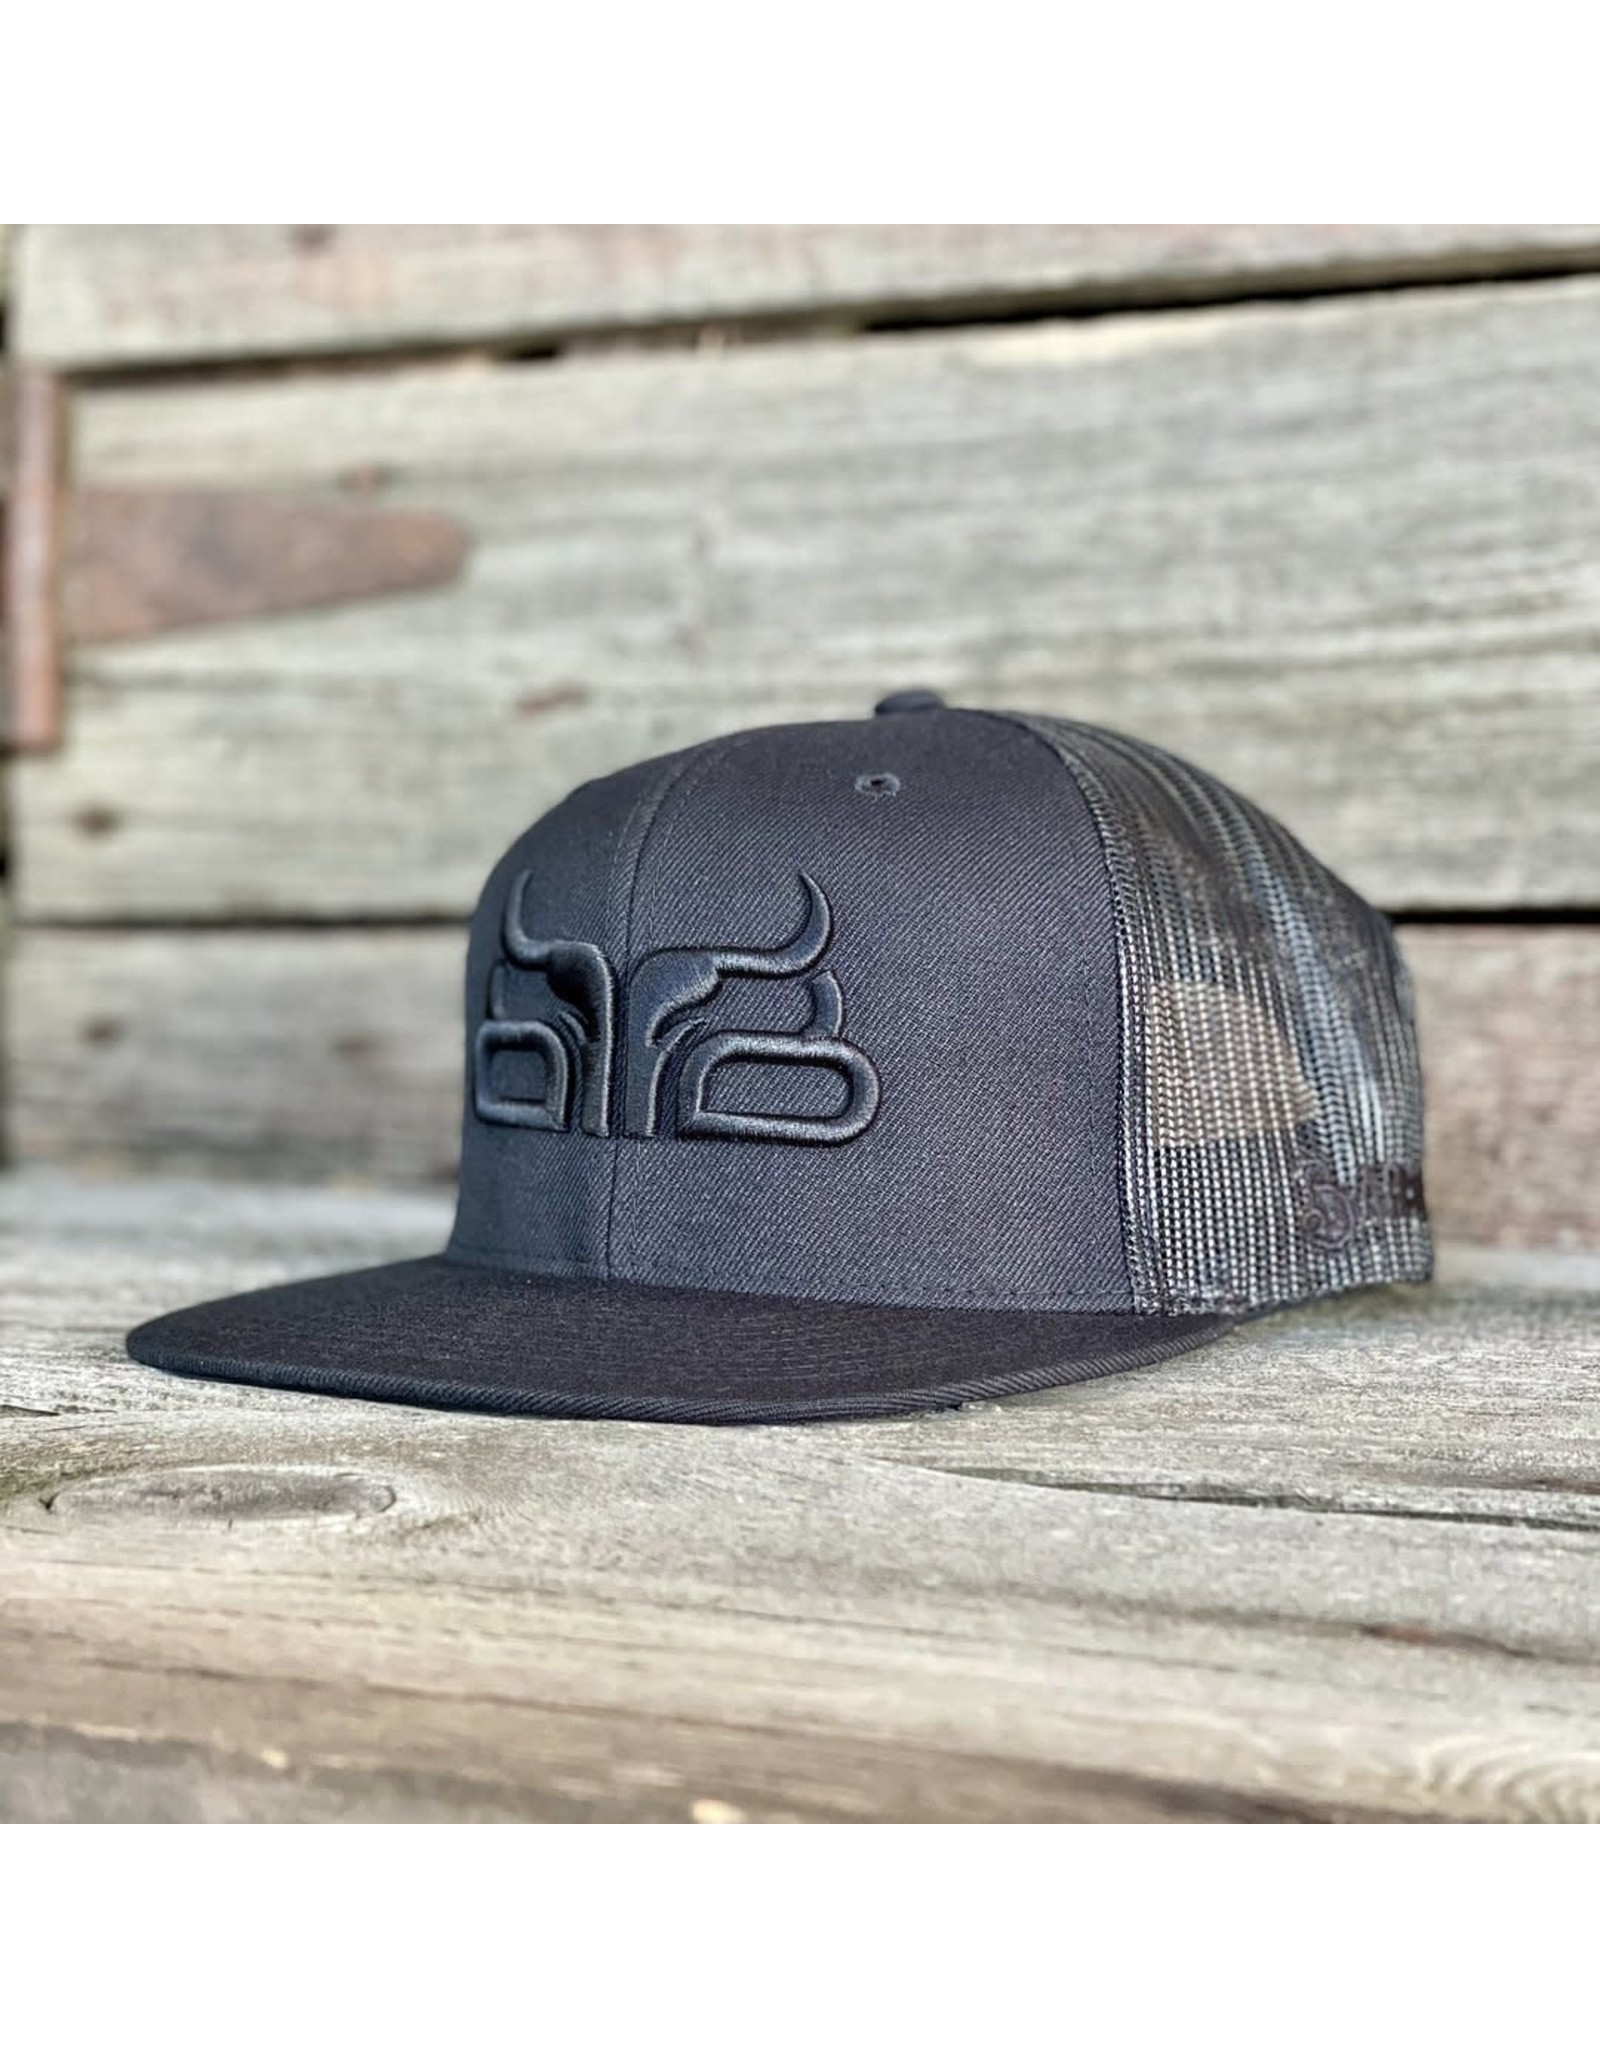 Baredown Brand BLACK/BLACK FLAT BILL HAT